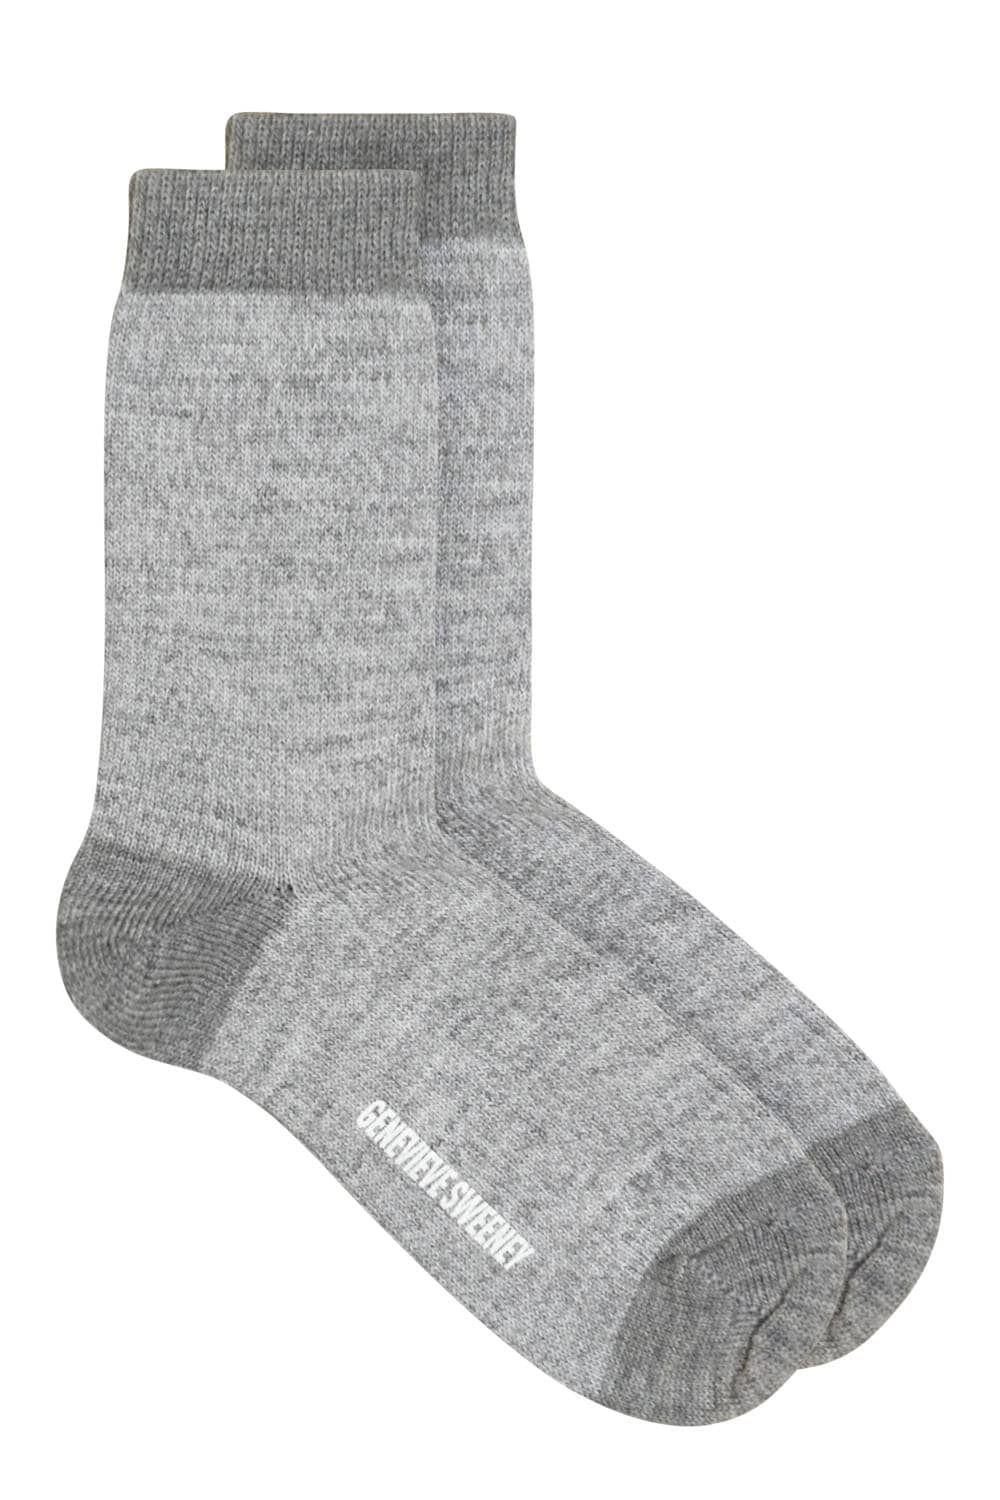 Luxury Unisex Merino Wool Socks Light Grey Marl - British Made